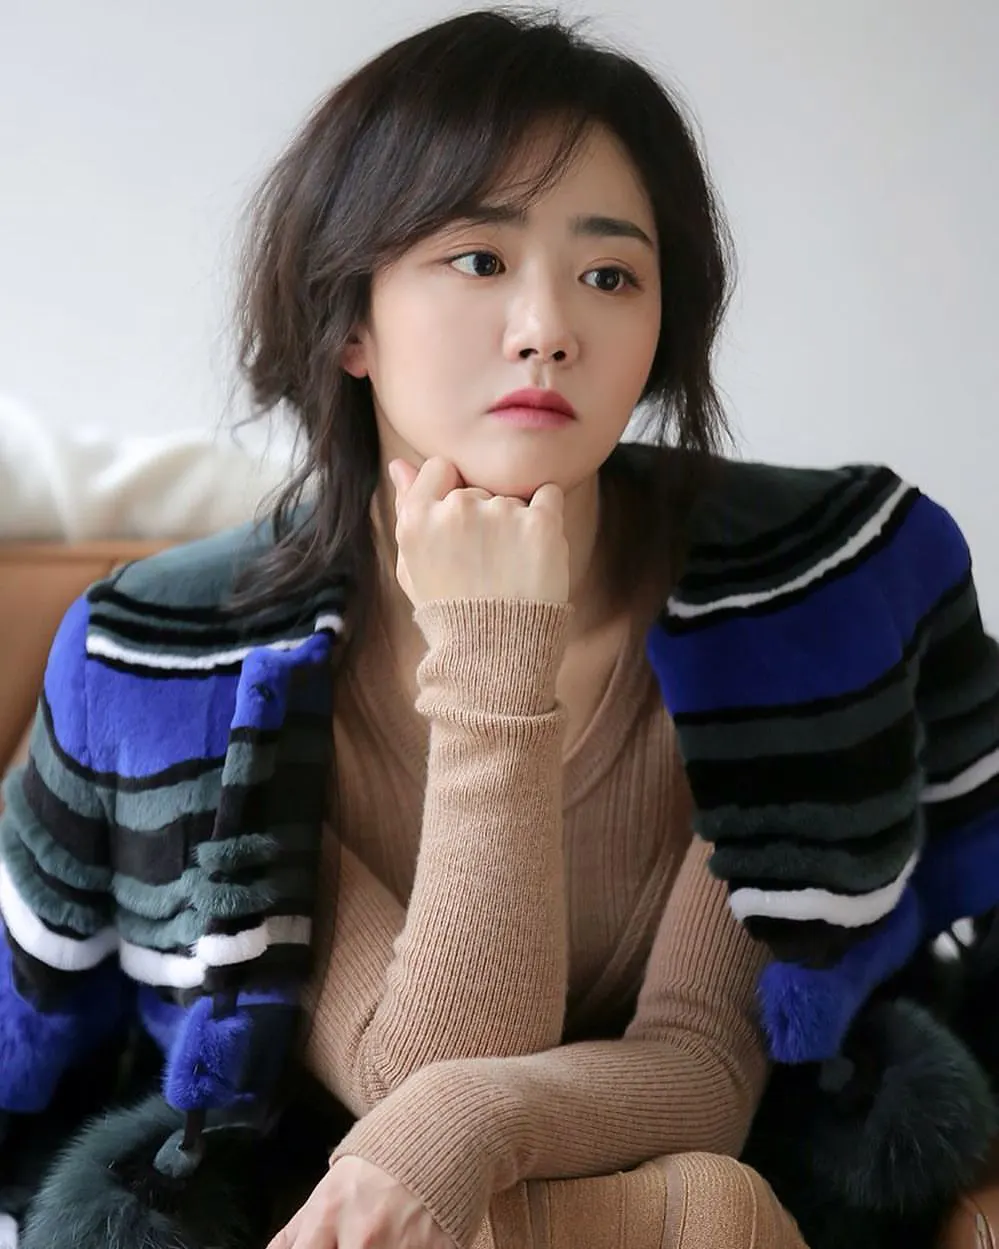 “Em gái quốc dân” Moon Geun Young ở tuổi U40: Từng gây ấn tượng với khoảnh khắc cạnh Son Ye Jin, cuộc sống thay đổi sau biến cố - Ảnh 6.